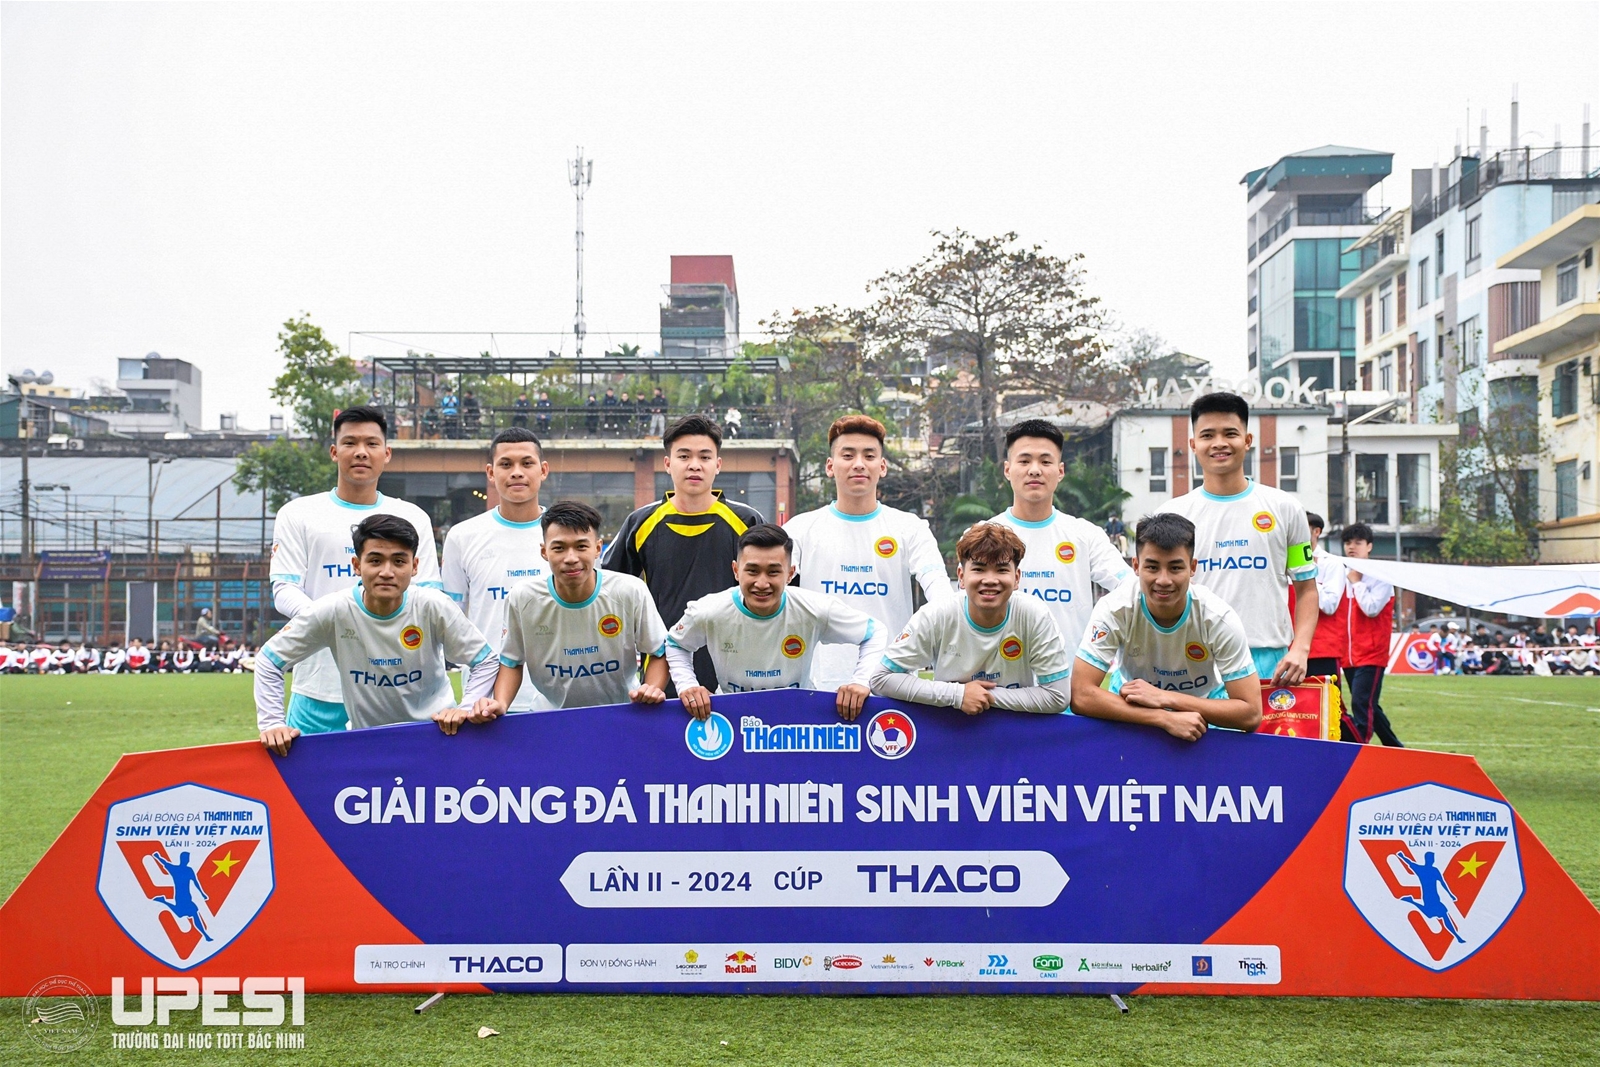 𝗨𝗣𝗘𝗦𝟭 khởi đầu hoàn hảo tại giải bóng đá thanh niên sinh viên Việt Nam lần II – 2024 cúp Thaco